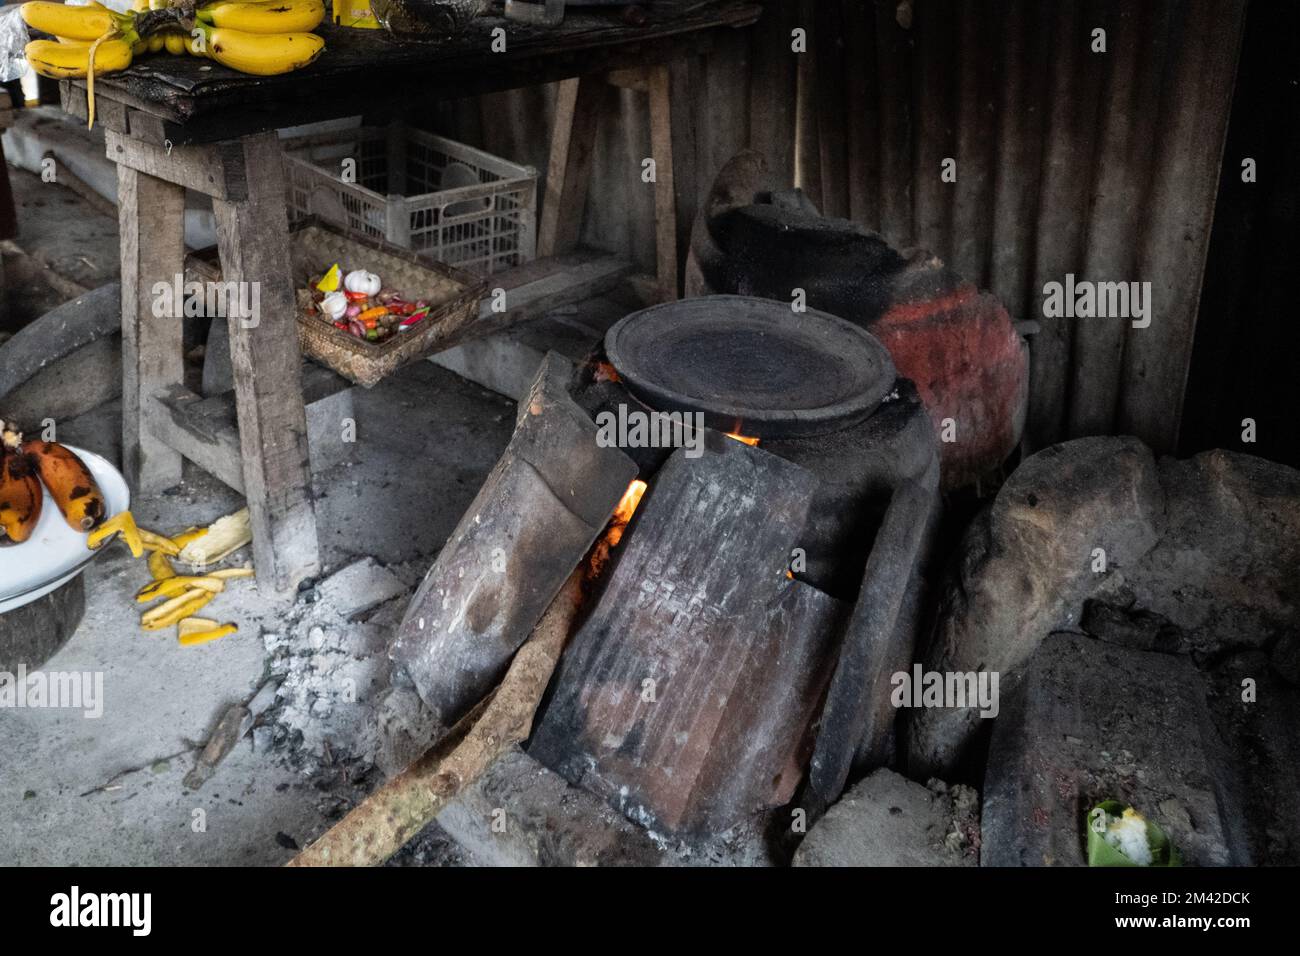 Die traditionelle balinesische Küche ist komplett mit einem holzbefeuerten Tonherd. Der Herd ist schwarz, weil er vom Feuer verbrannt wurde. Ton- und holzbefeuerte Straße Stockfoto